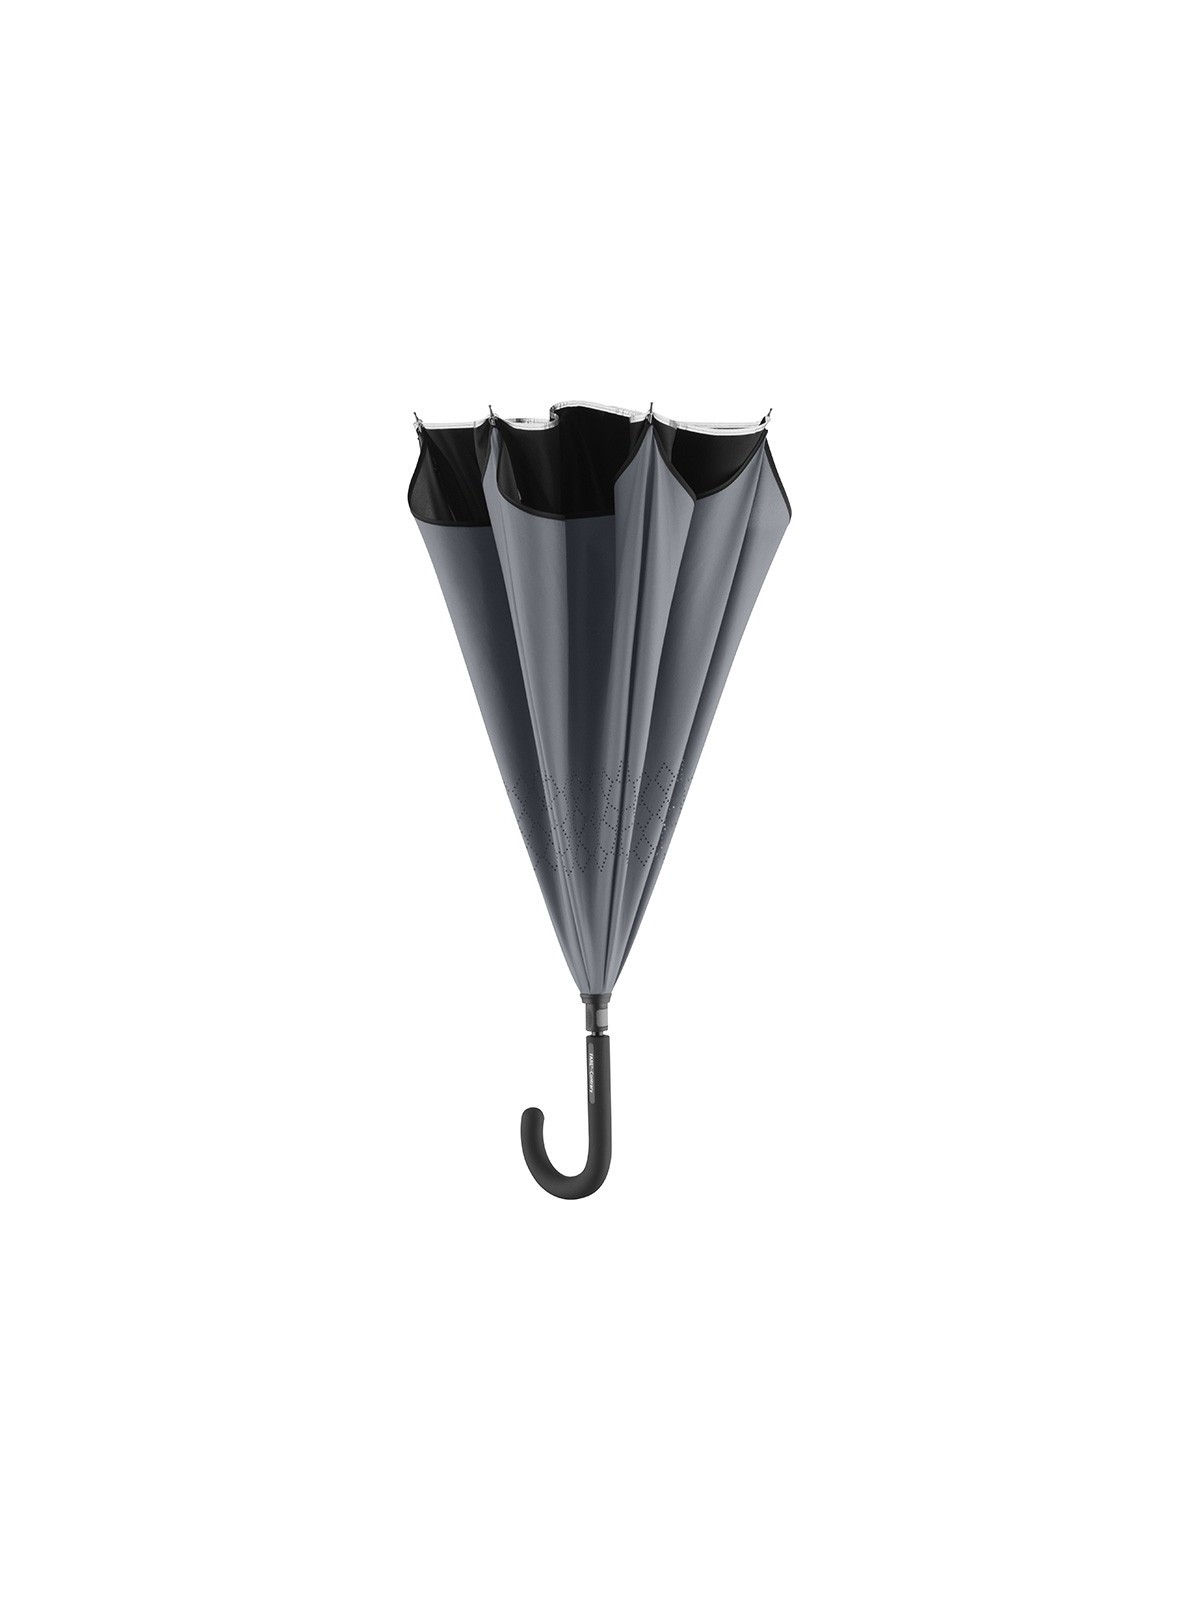 75-029 Parapluie publicitaire bi-colore inversé personnalisé